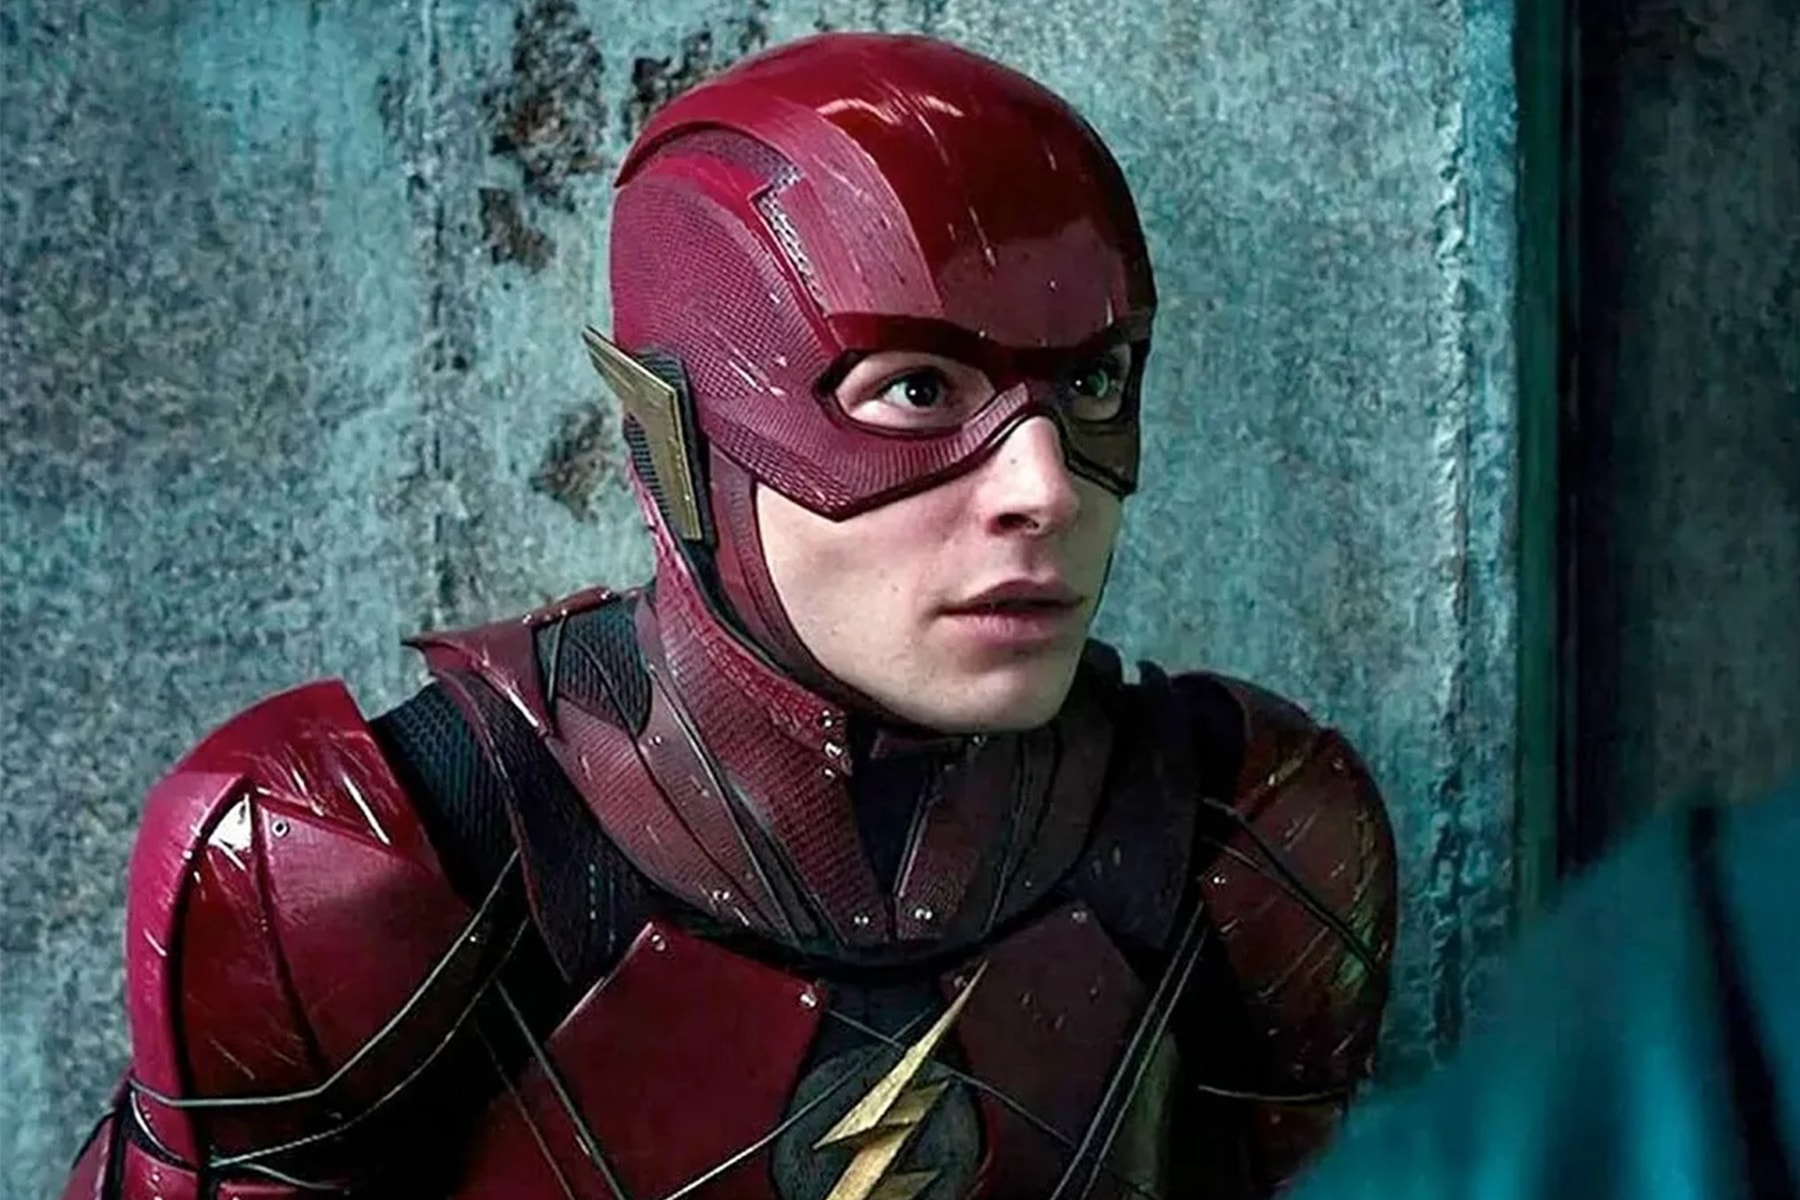 《閃電俠 The Flash》主演 Ezra Miller 正式發佈聲明向過去脫序行為致歉